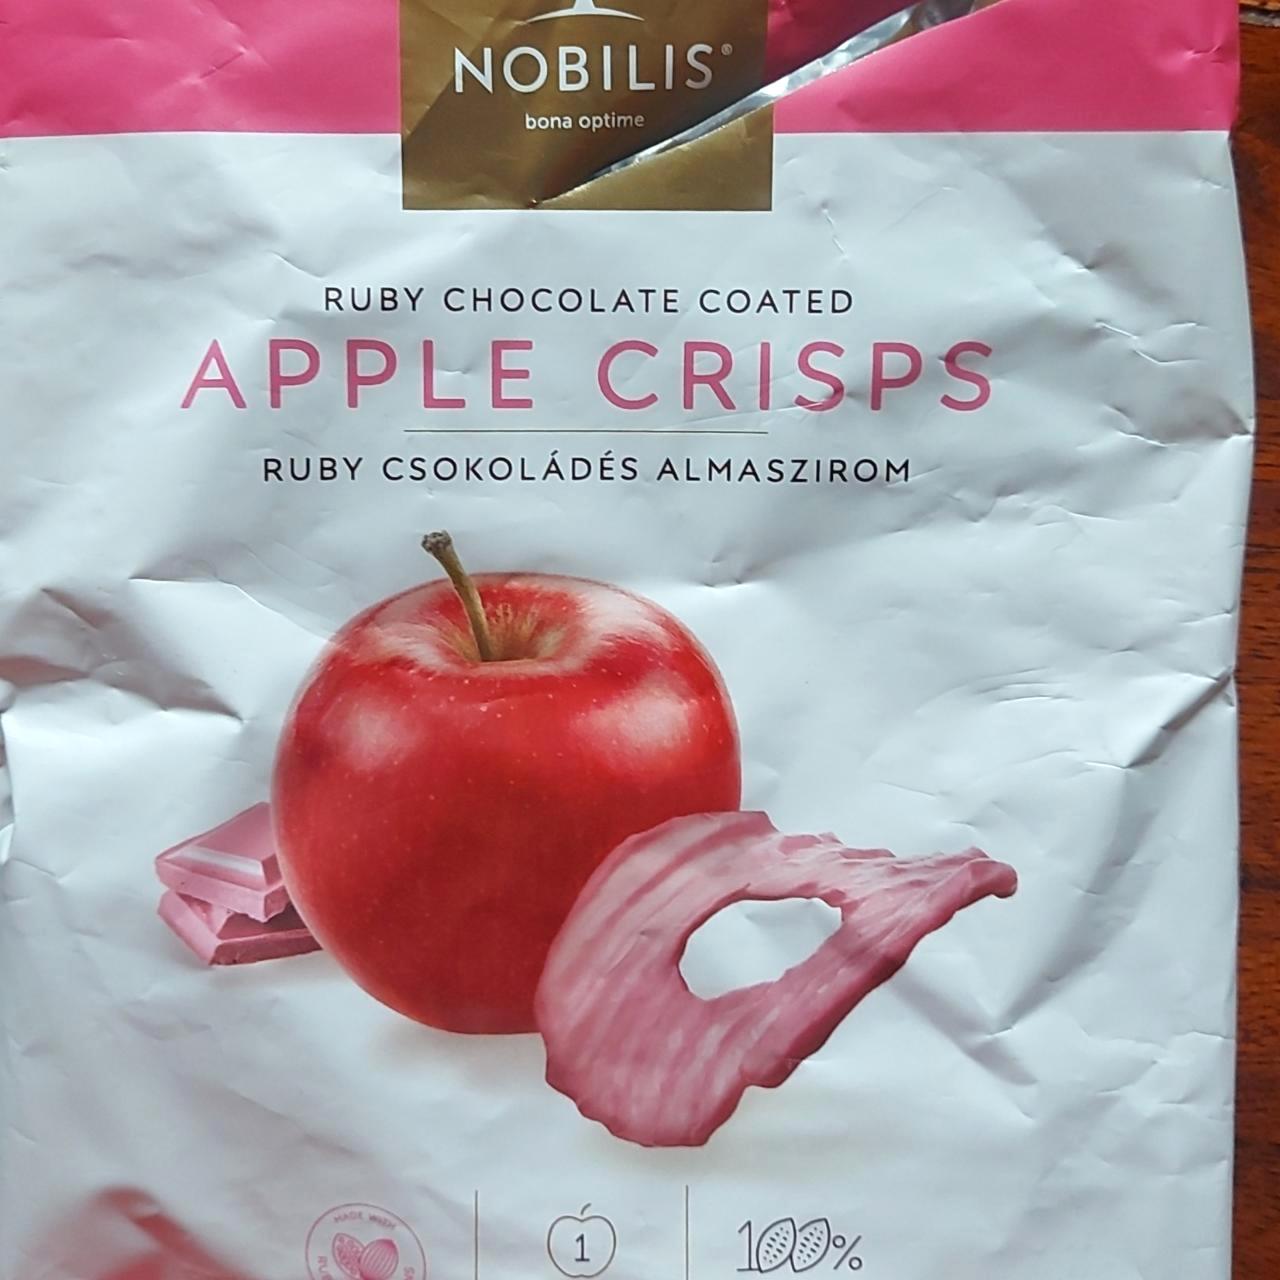 Képek - Apple crisps Ruby csokoládés almaszirom Nobilis